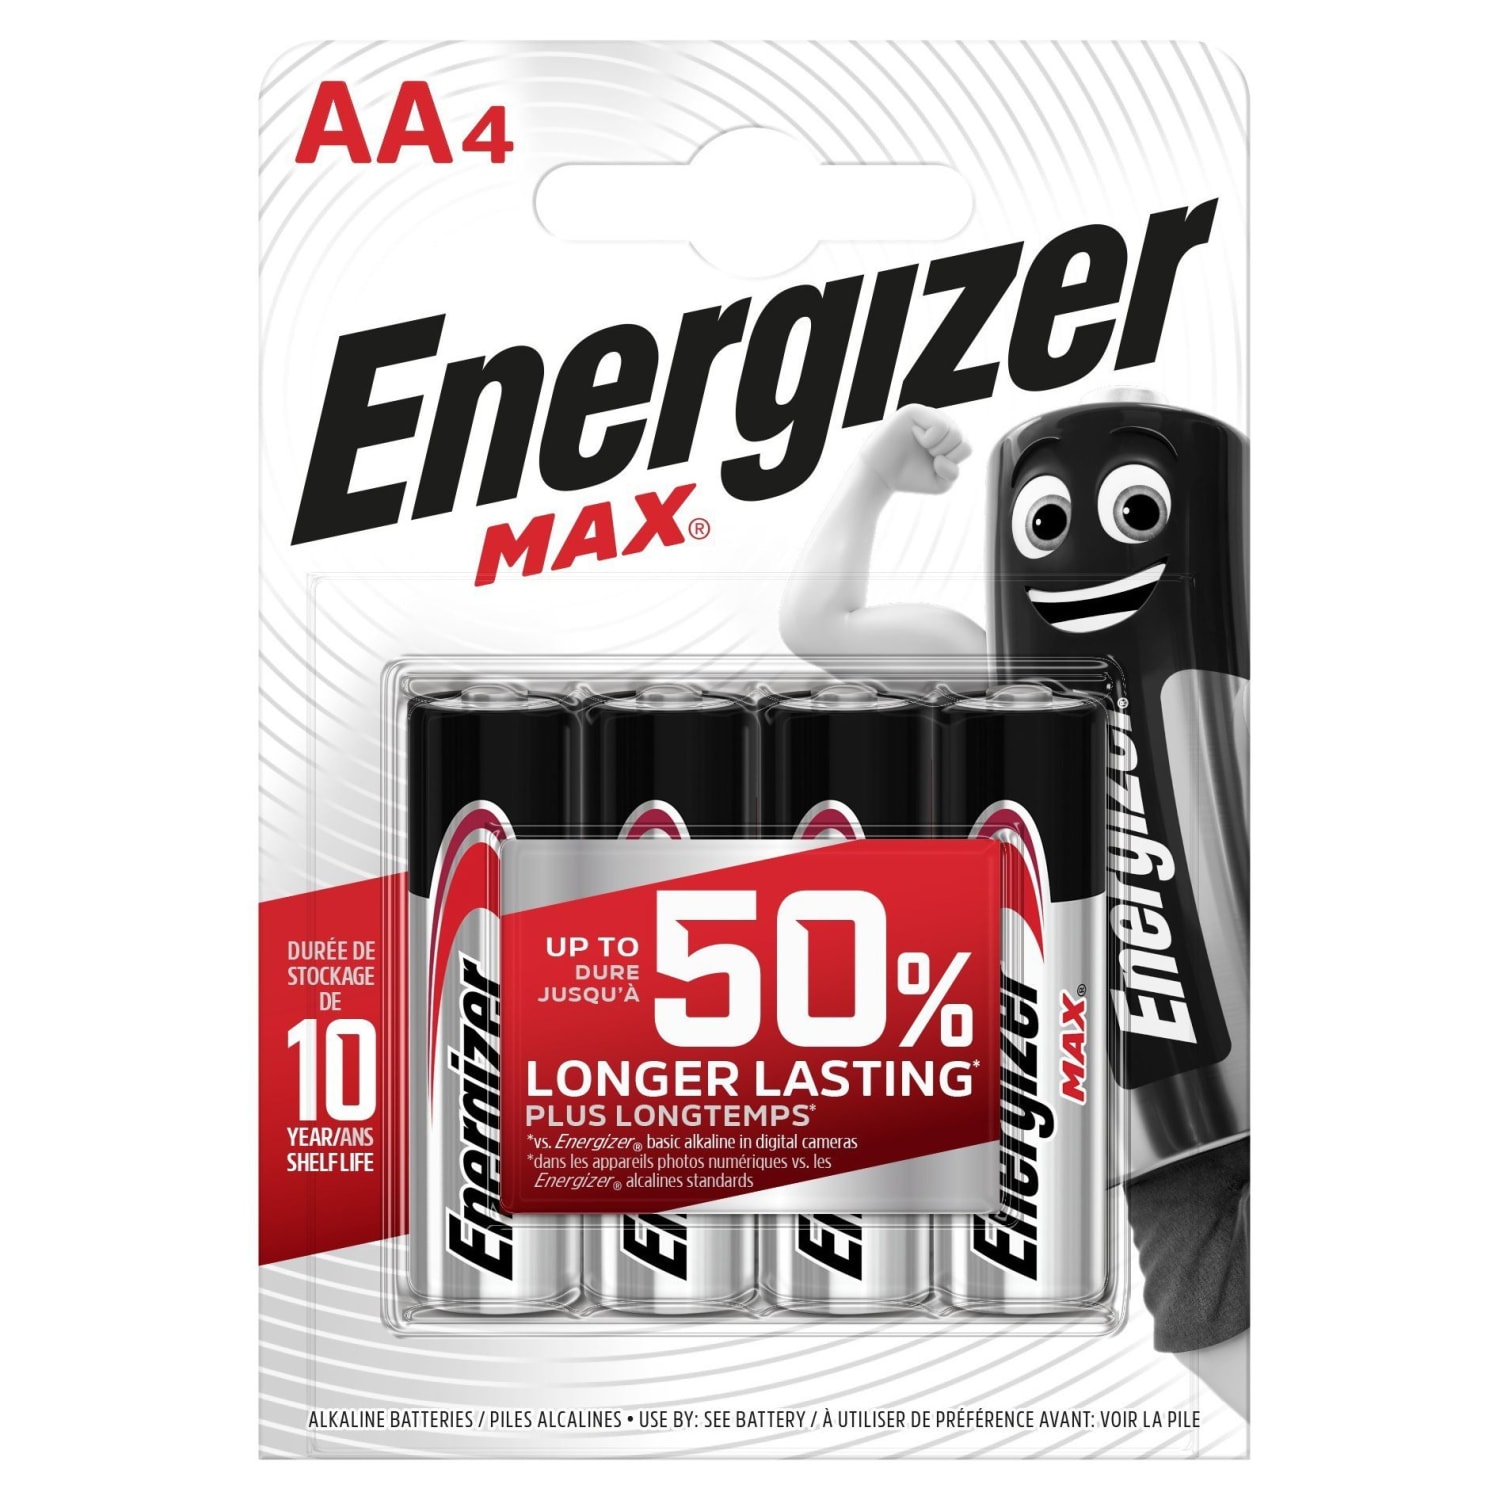 Energizer Batteries – UK Distributors